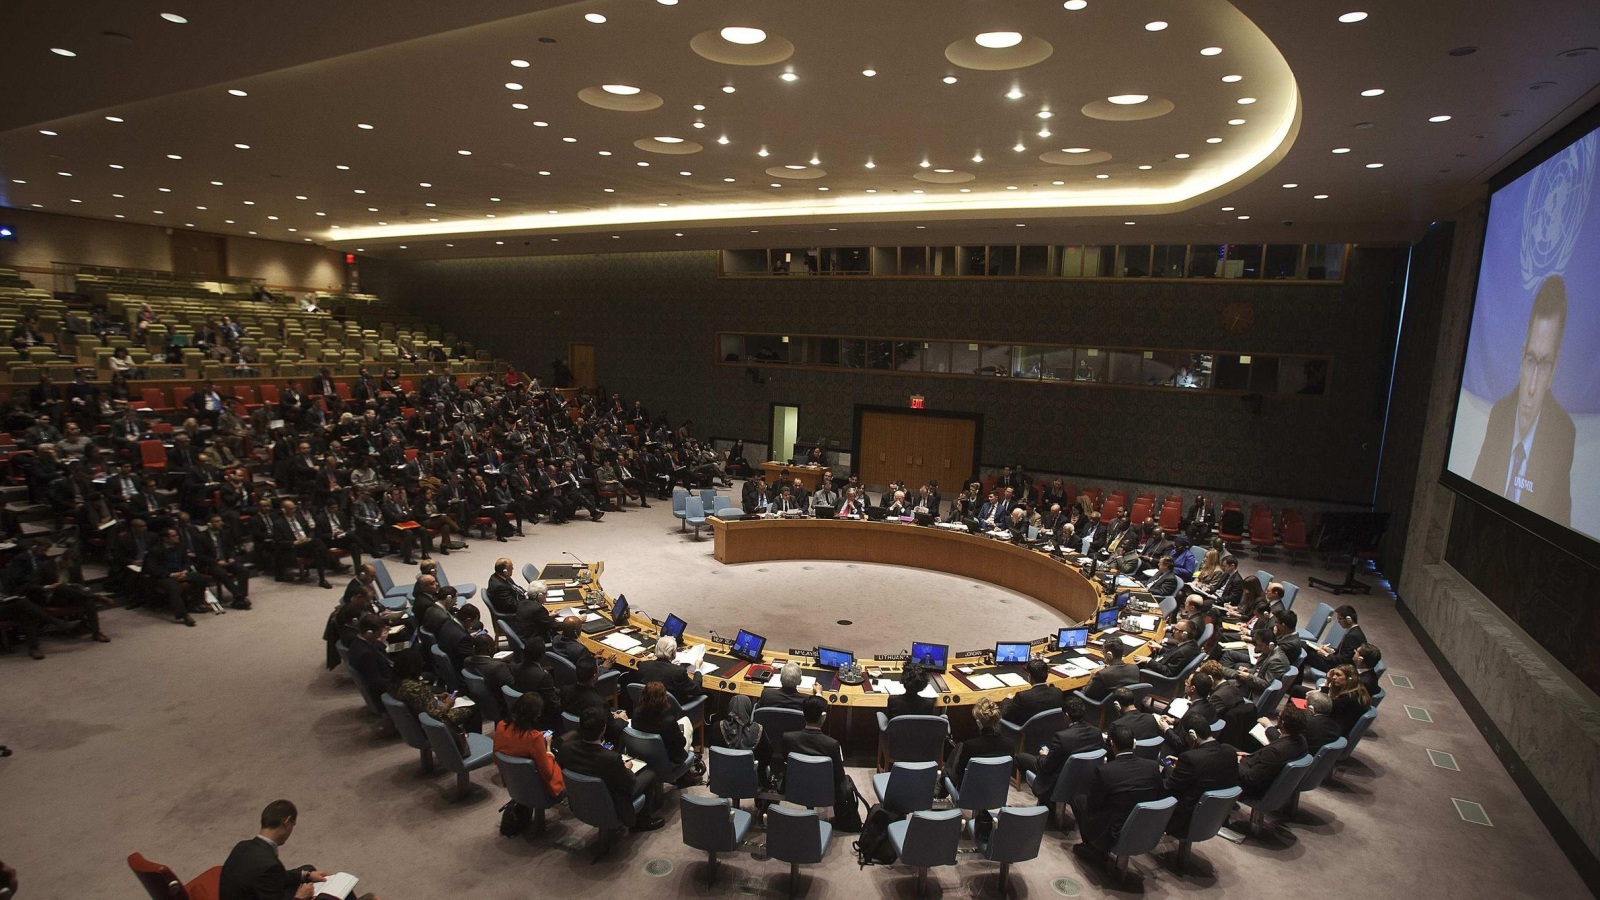 مجلس الأمن دعا للحفاظ على الوضع التاريخي للحرم القدسي والوقف الفوري لكل أشكال العنف (الأوروبية-أرشيف)